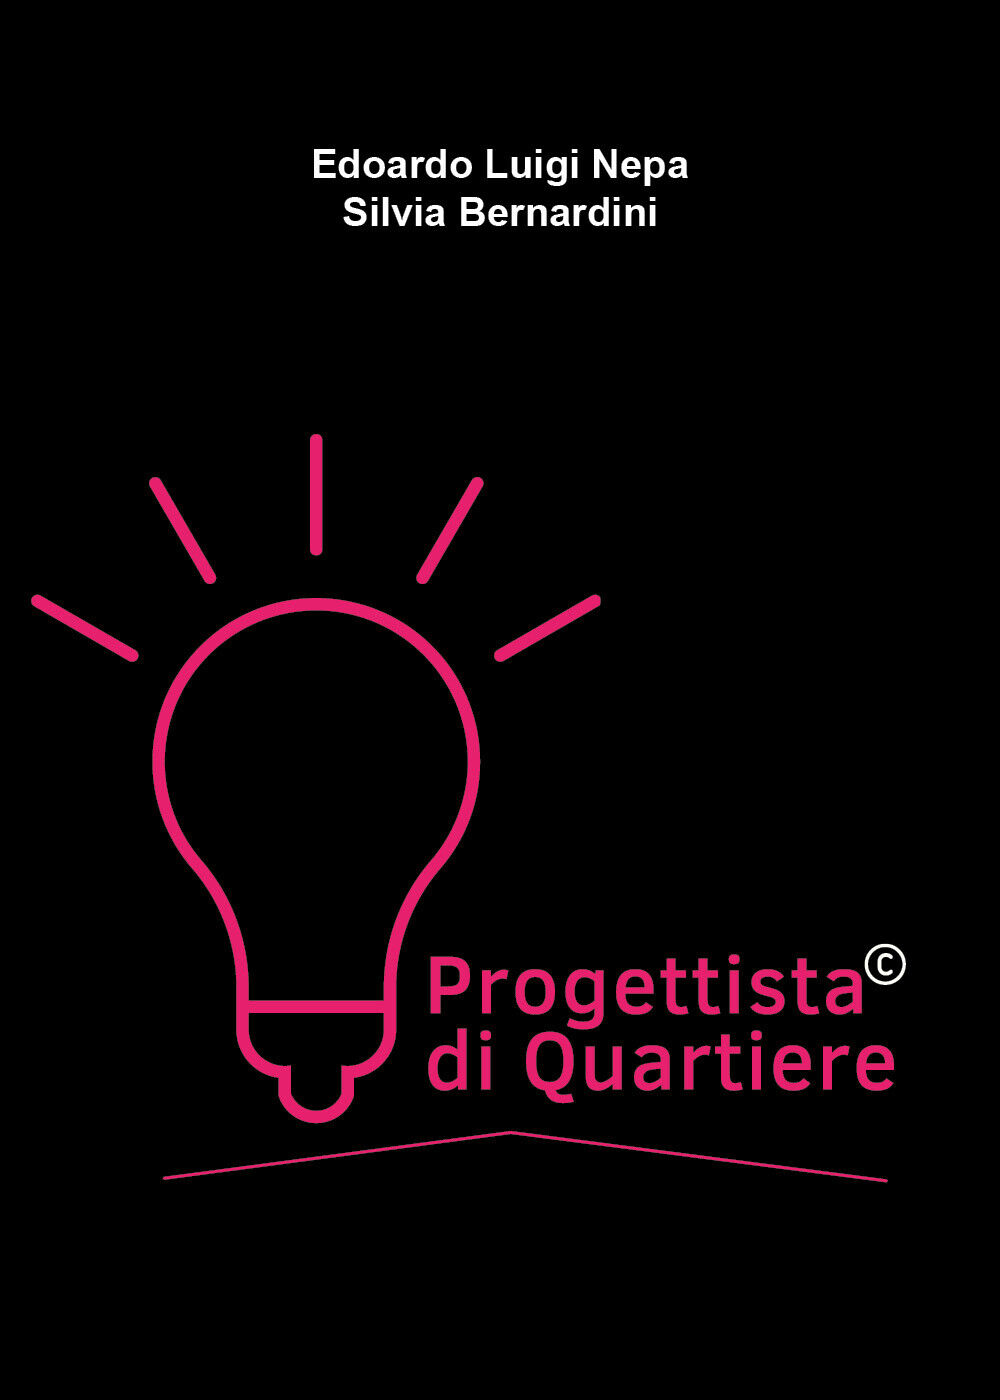  Progettista di Quartiere di Edoardo Luigi Nepa, Silvia Bernardini,  2021,  You